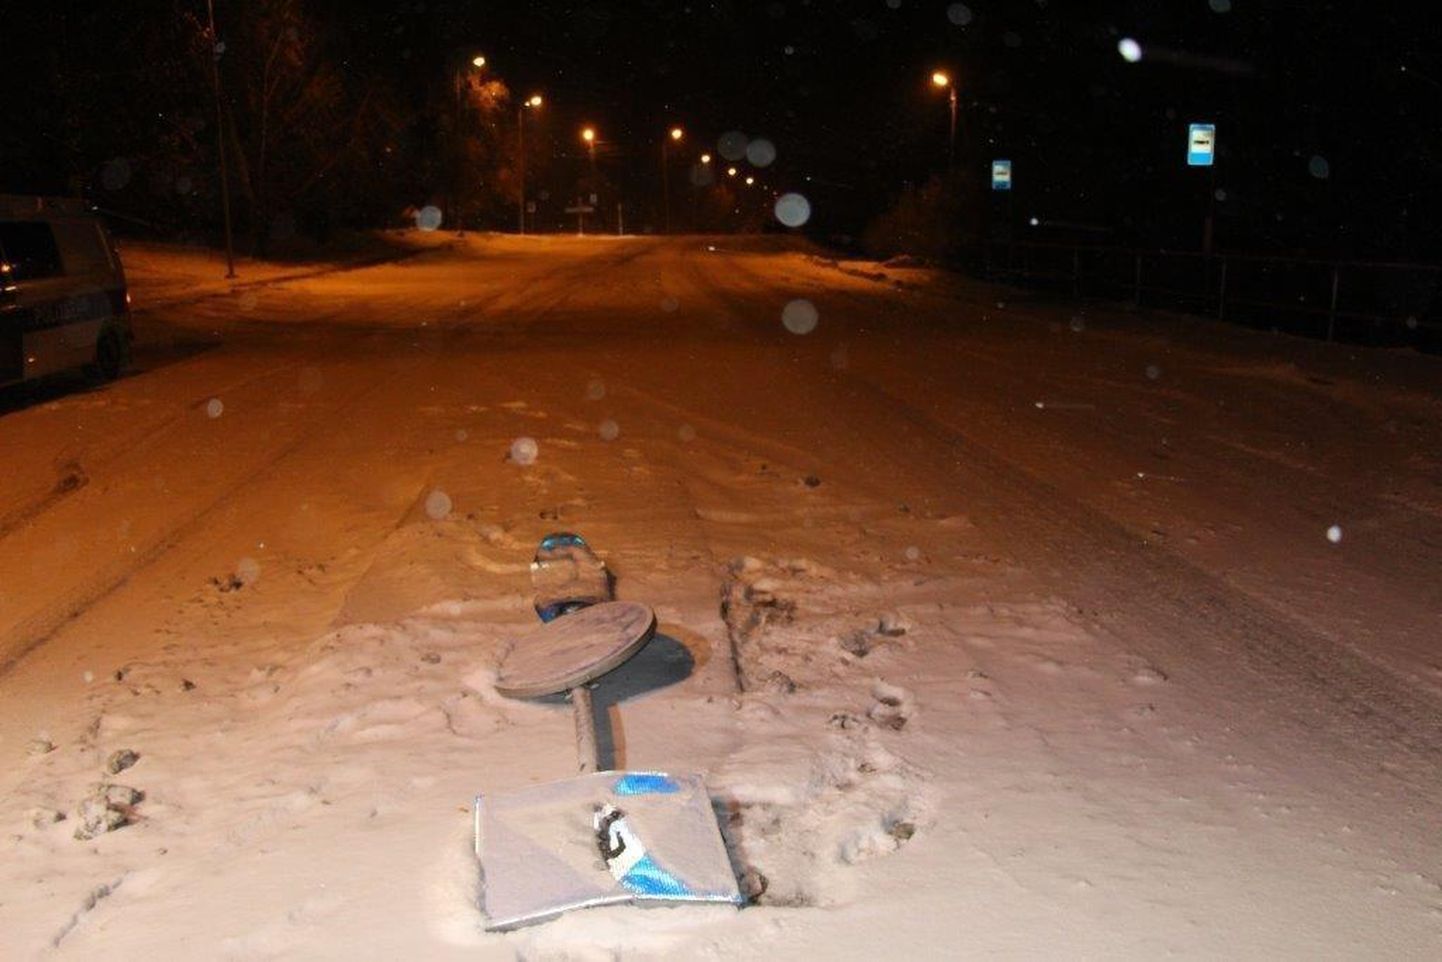 Ööl vastu tänast põrutas kaubaauto Pärnu linna tuiksoonel ohutussaarel otsa liiklusmärkidele. 